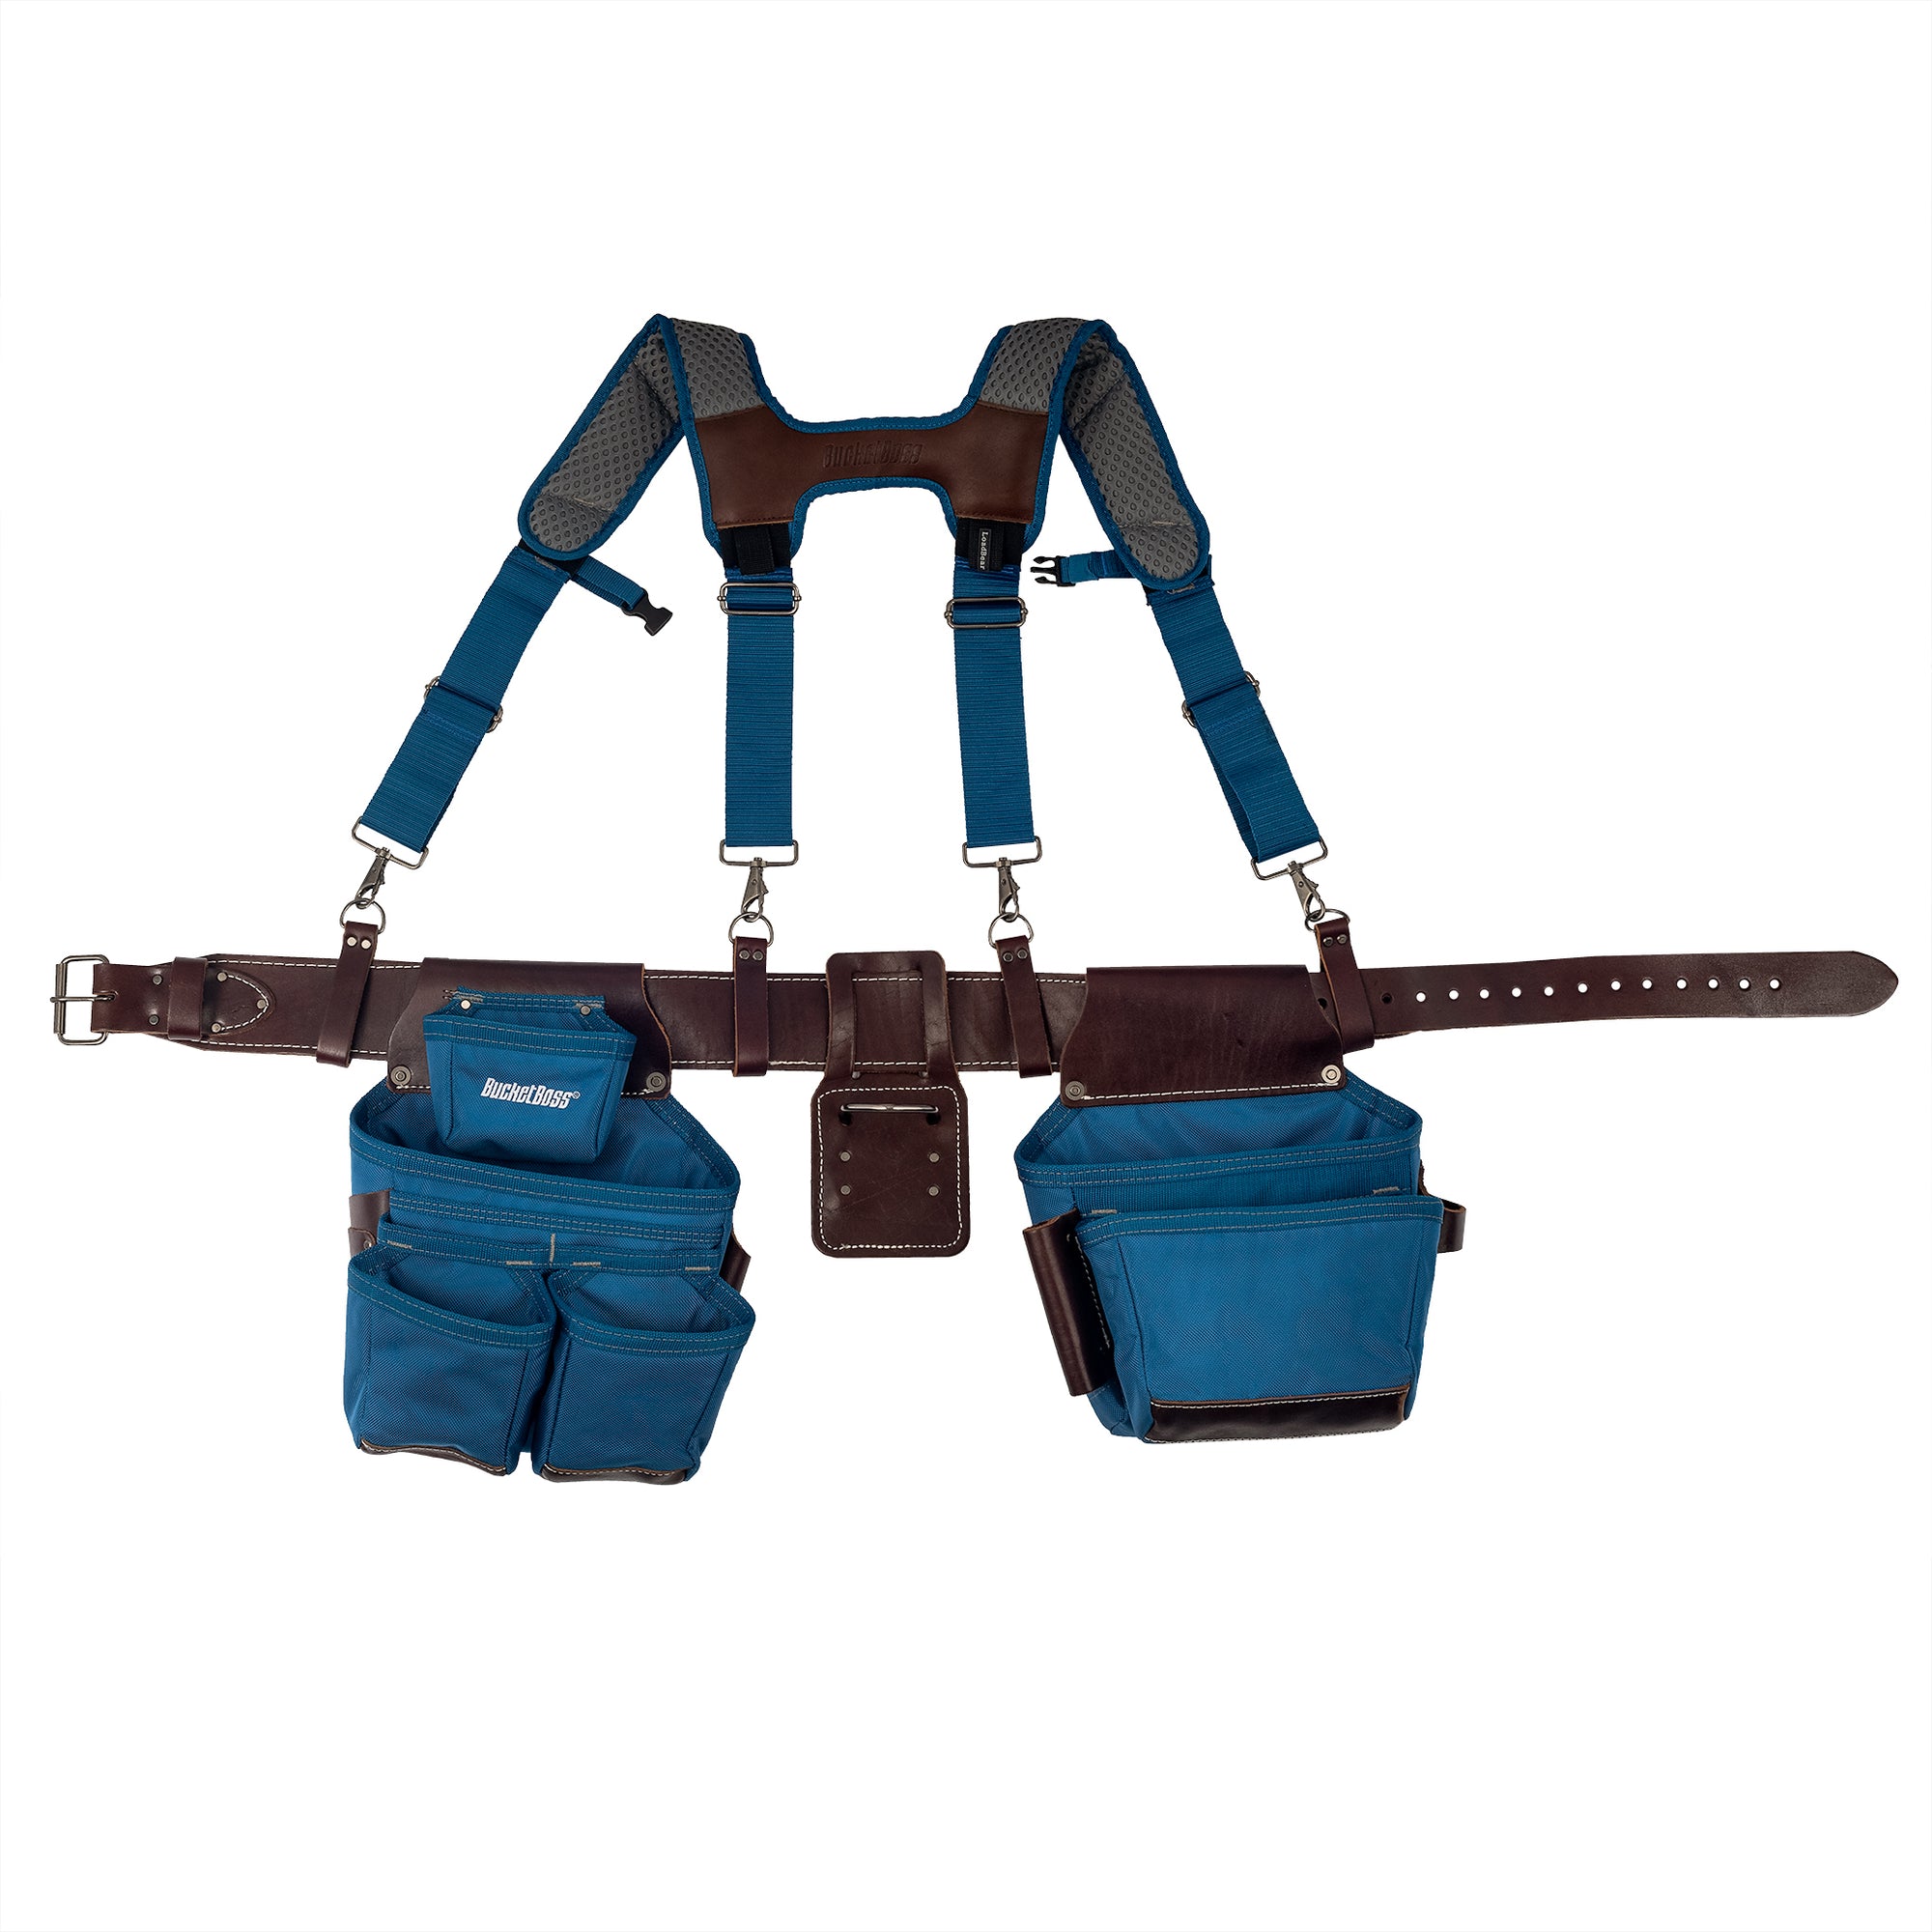 Blue Leather Hybrid 19-Pocket Suspension Rig